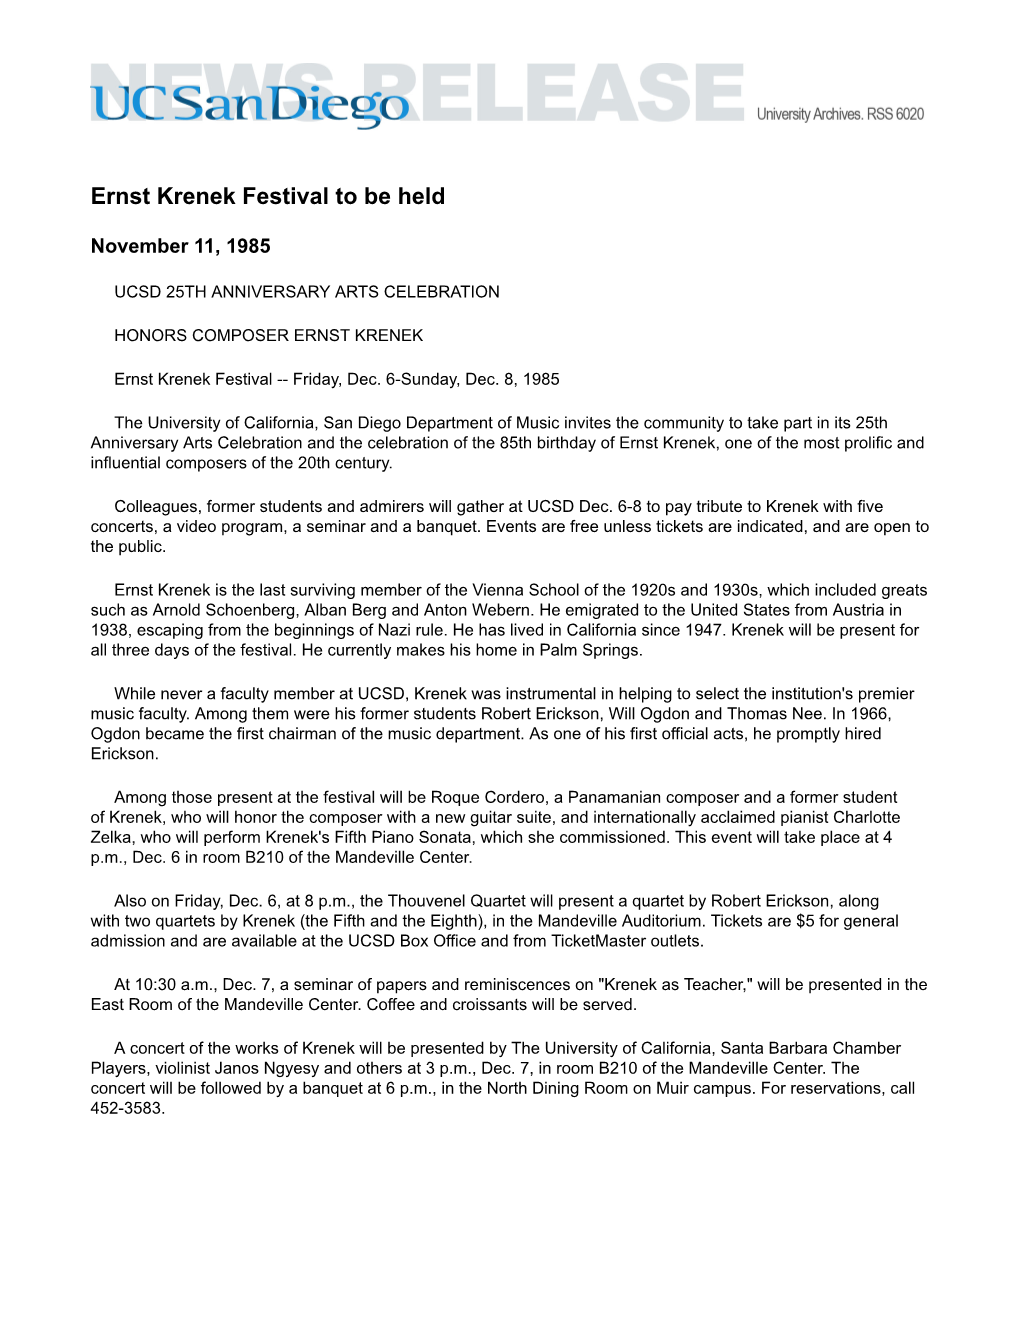 Ernst Krenek Festival to Be Held